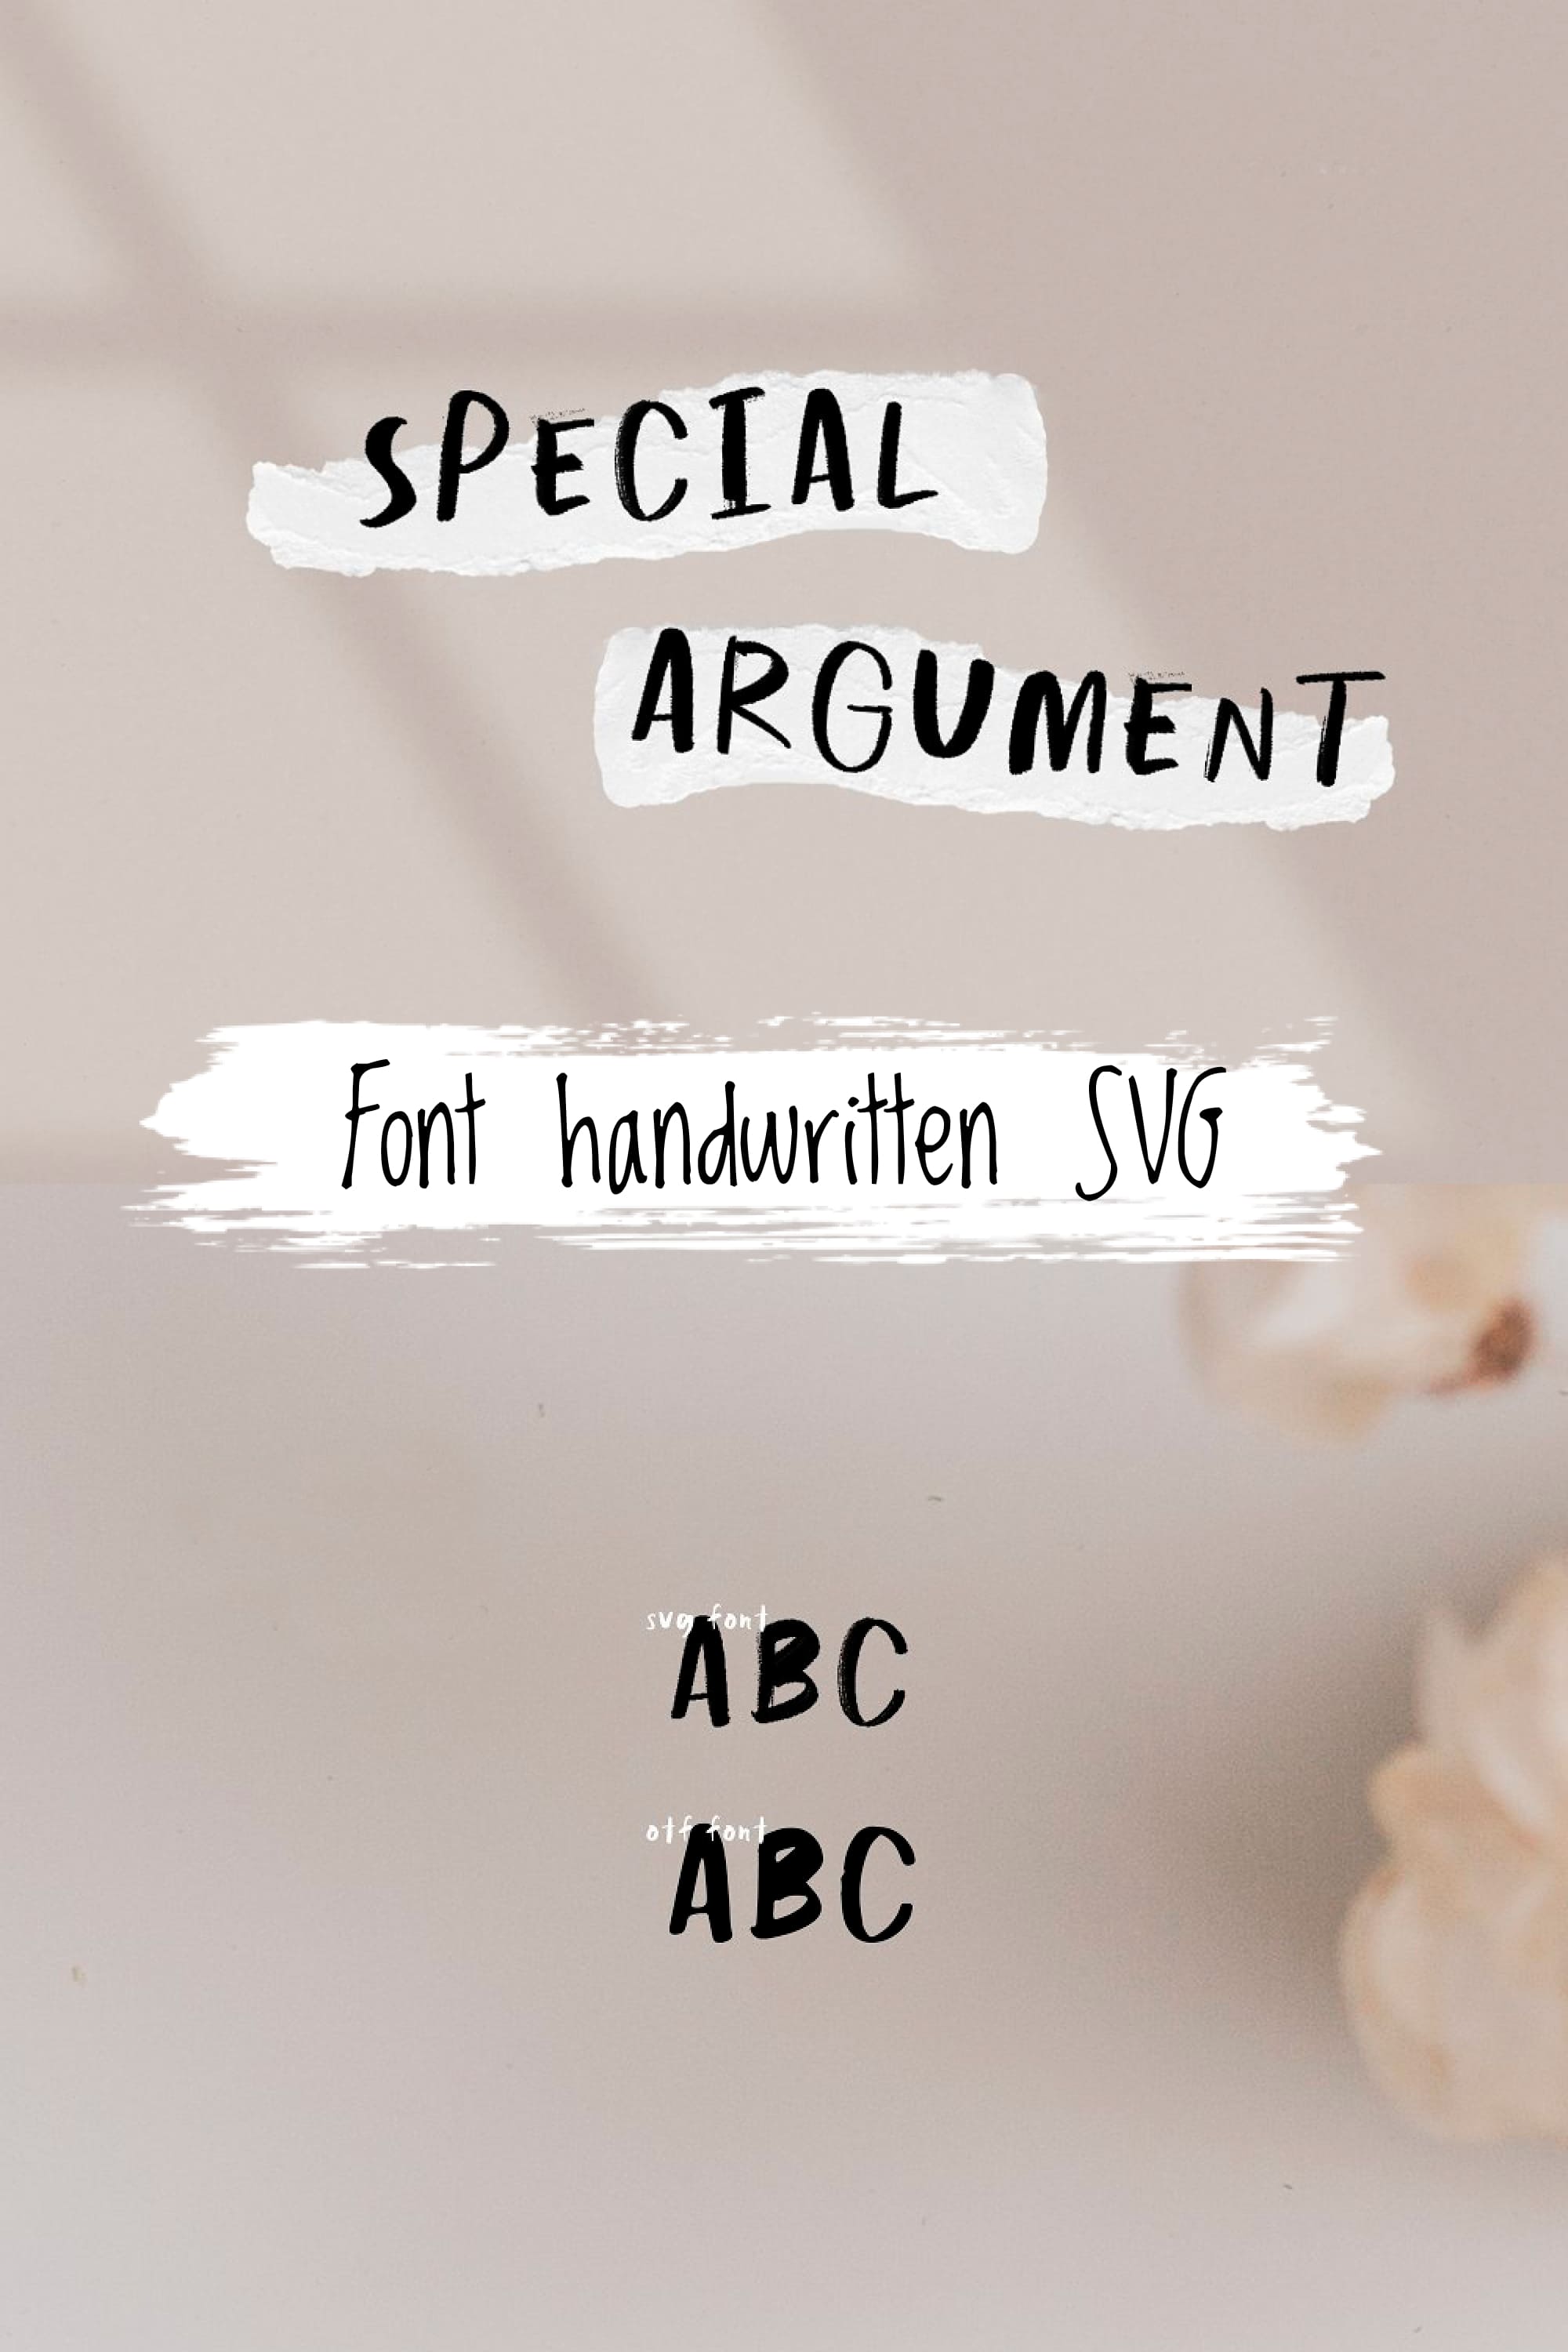 Special Argument SVG Handwritten Pinterest.